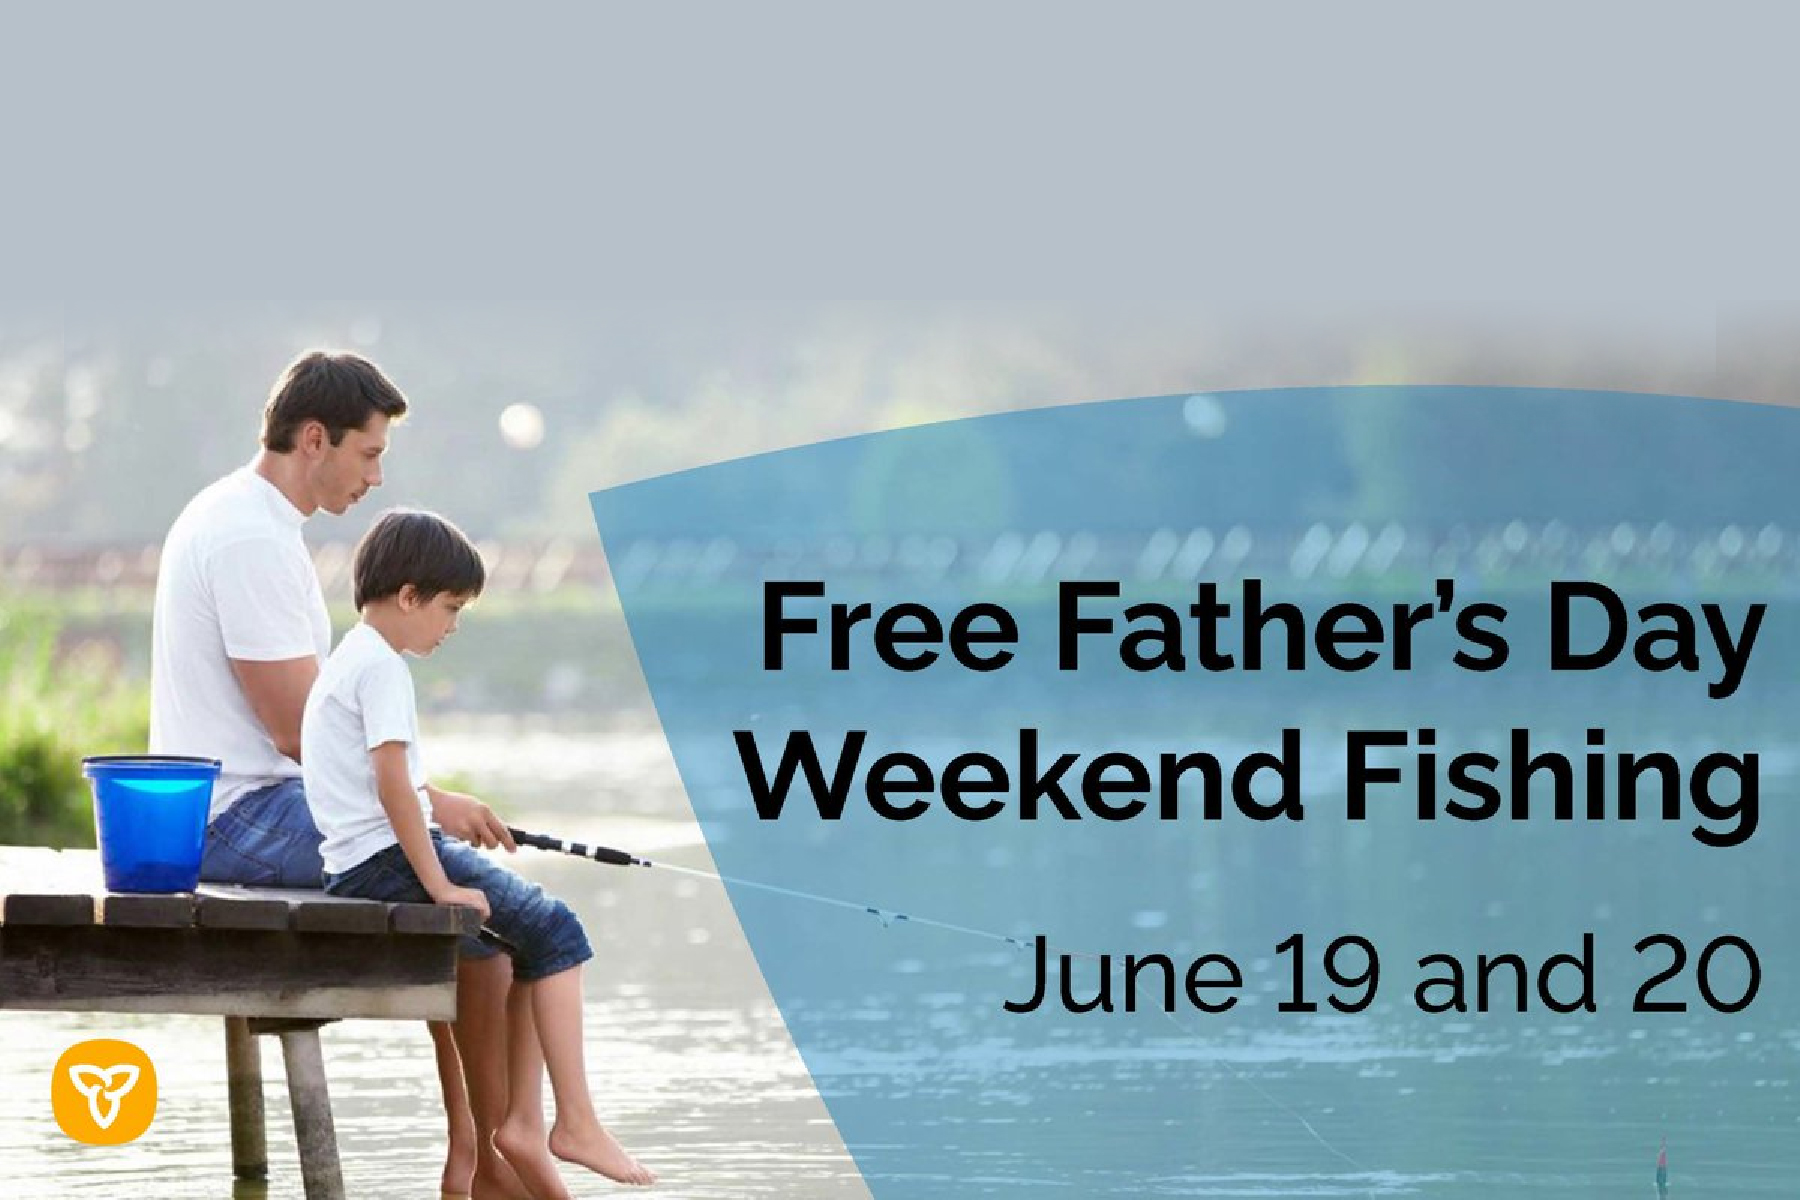 امکان ماهیگیری و استفاده از پارک رایگان در آخر هفته روز پدر در انتاریو